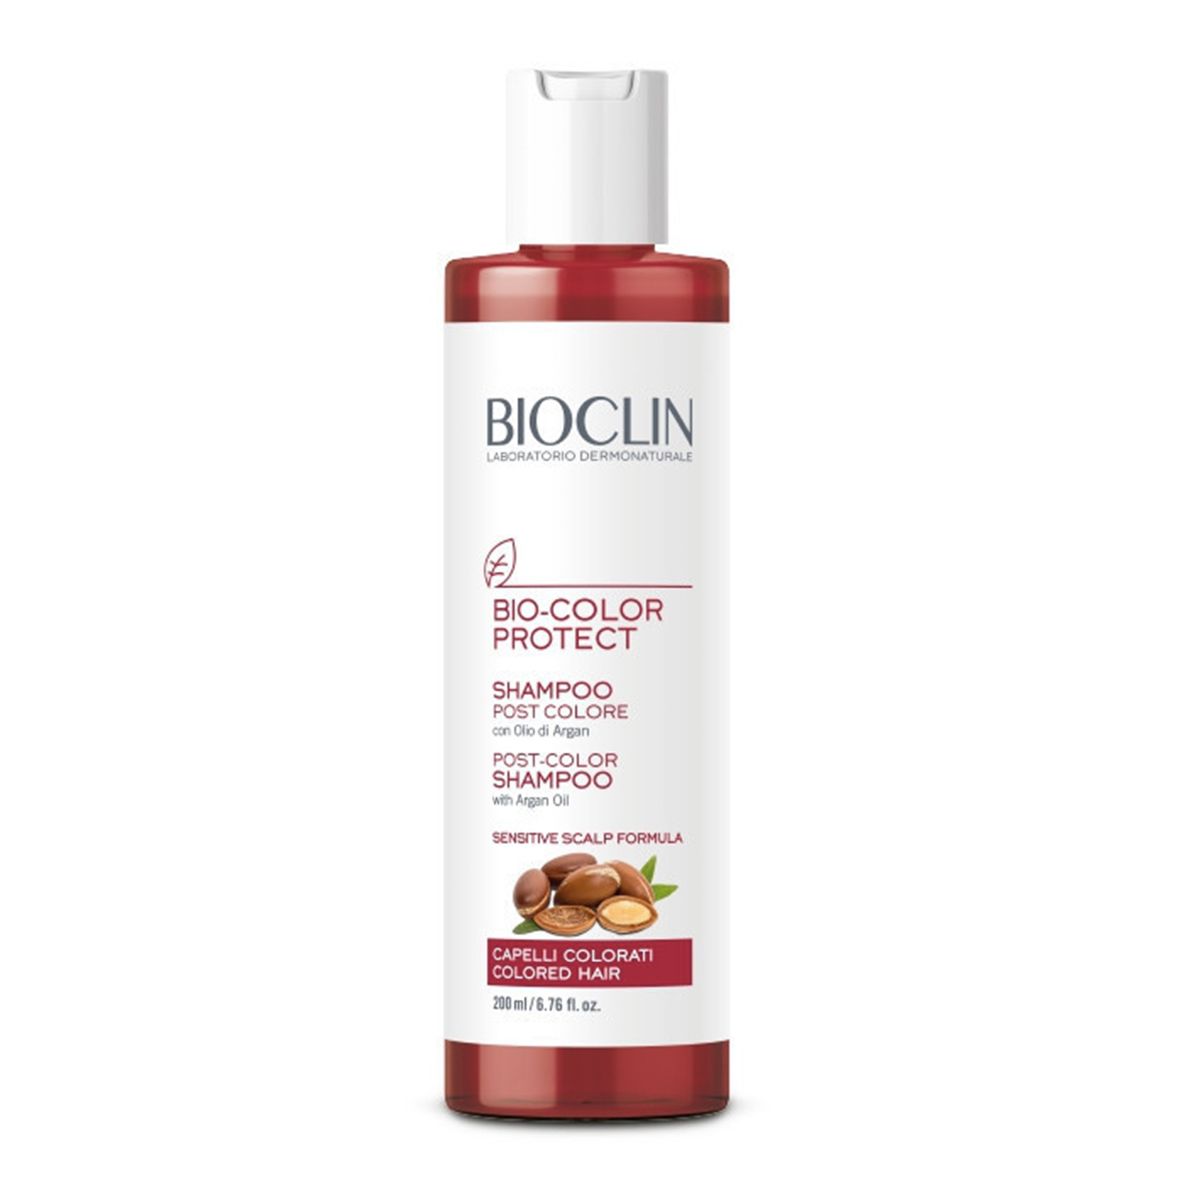 Bioclin Bio Color Shampoo Post Colore 200ml